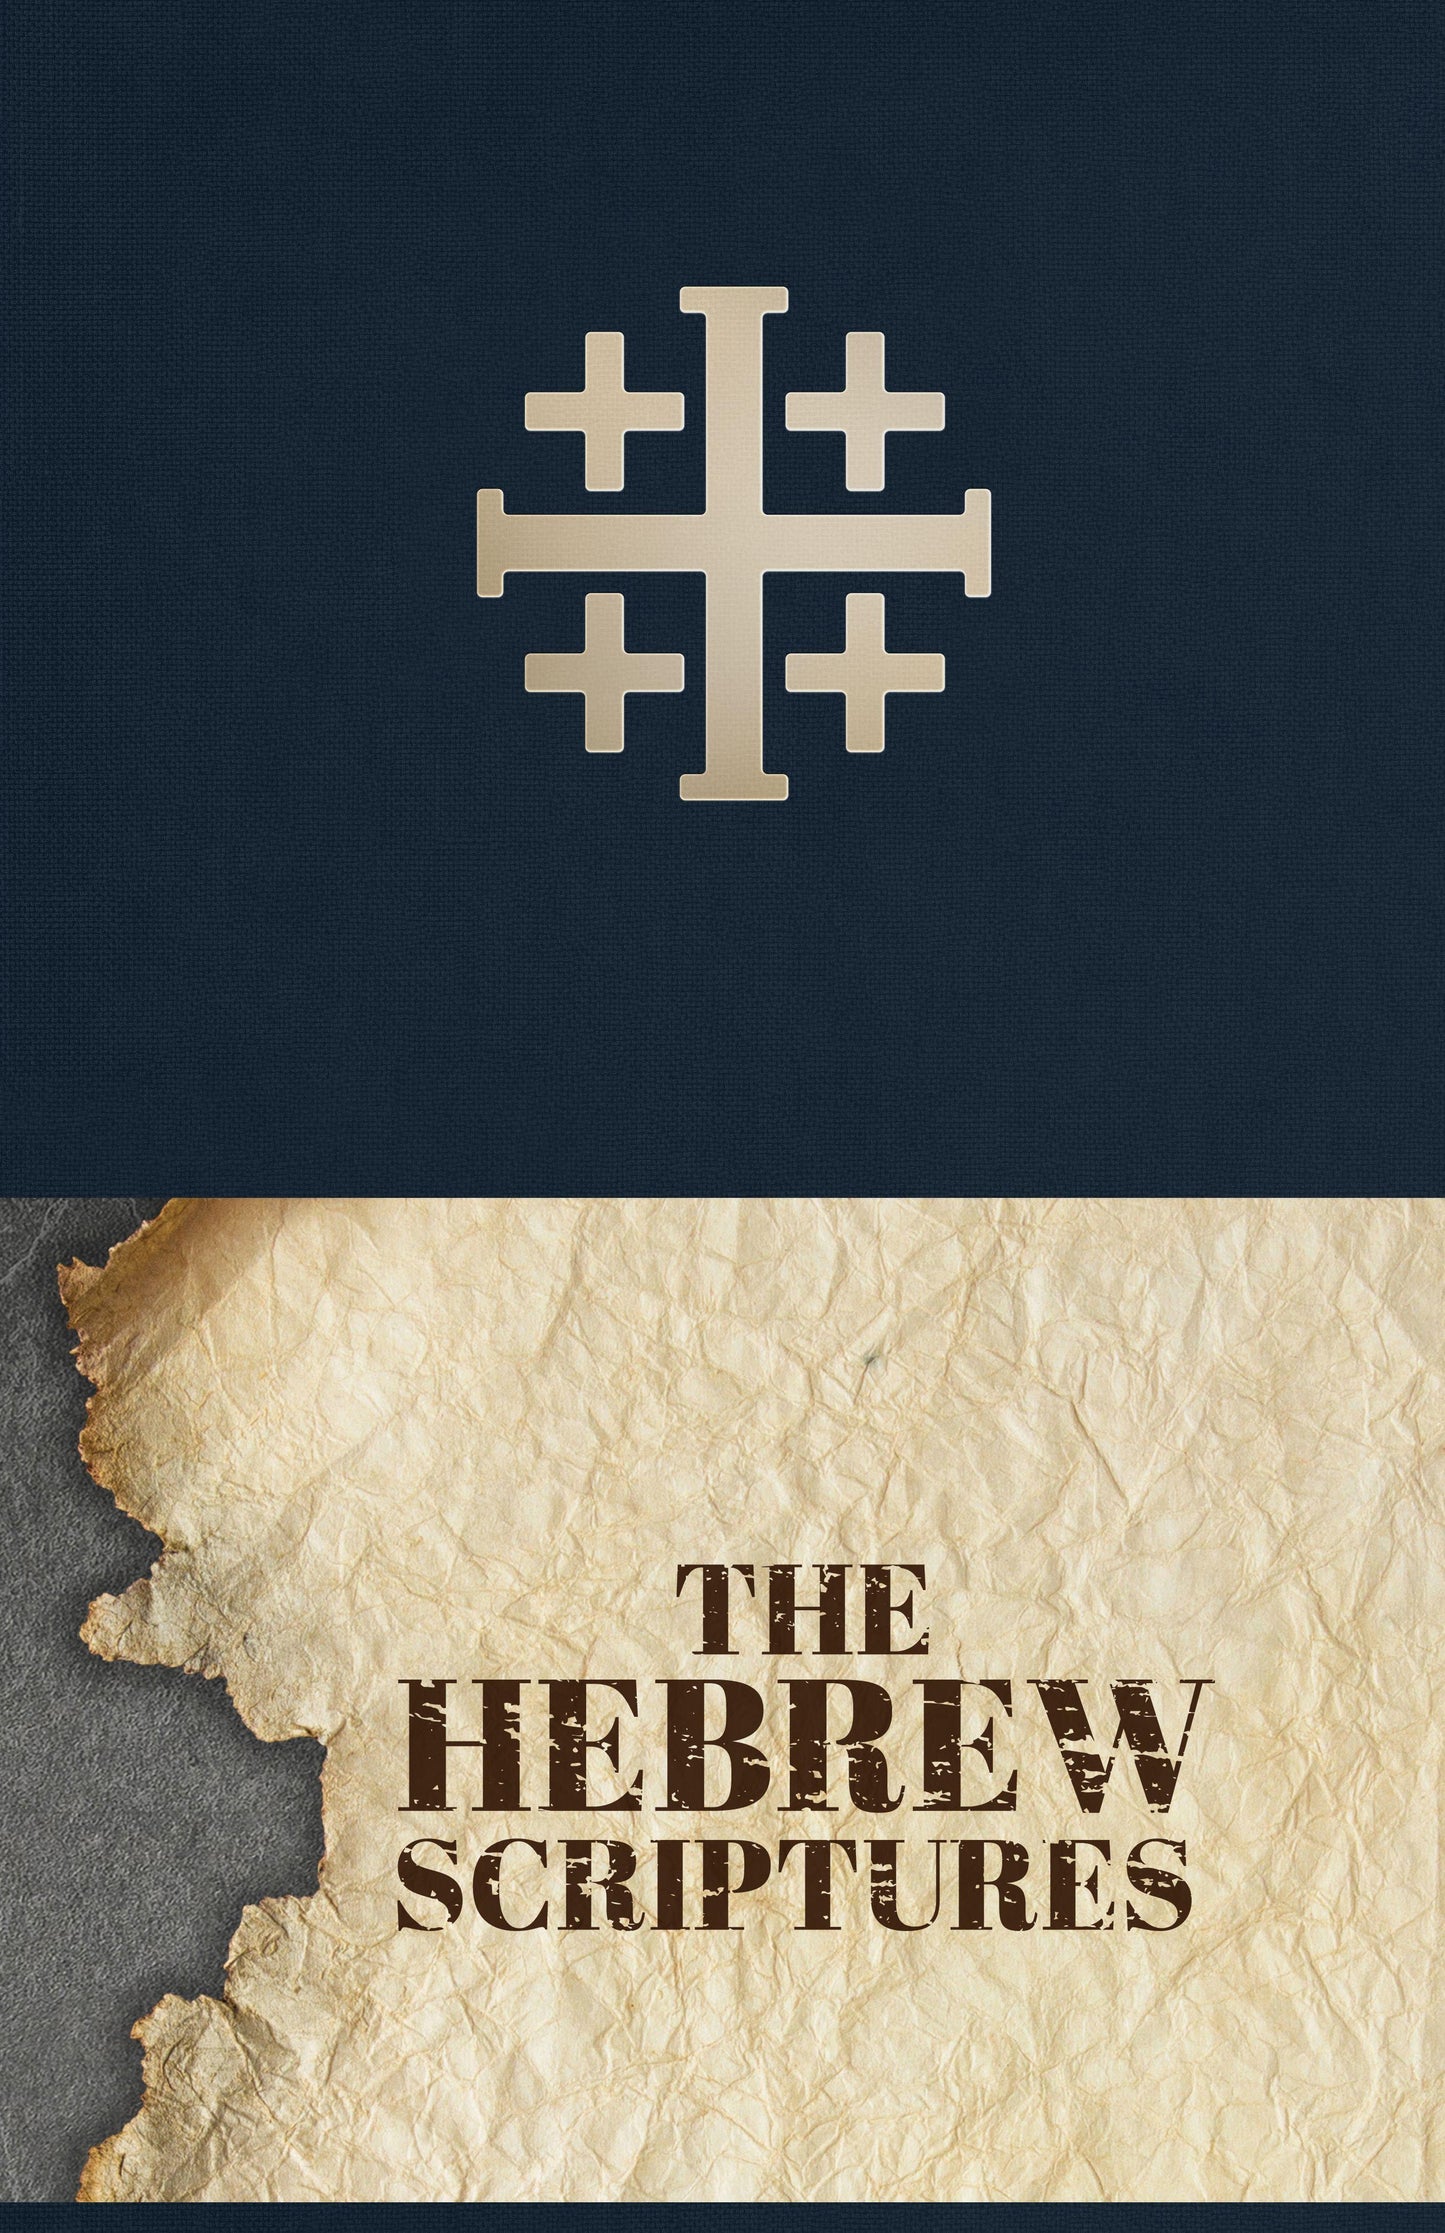 The Hebrew Scriptures